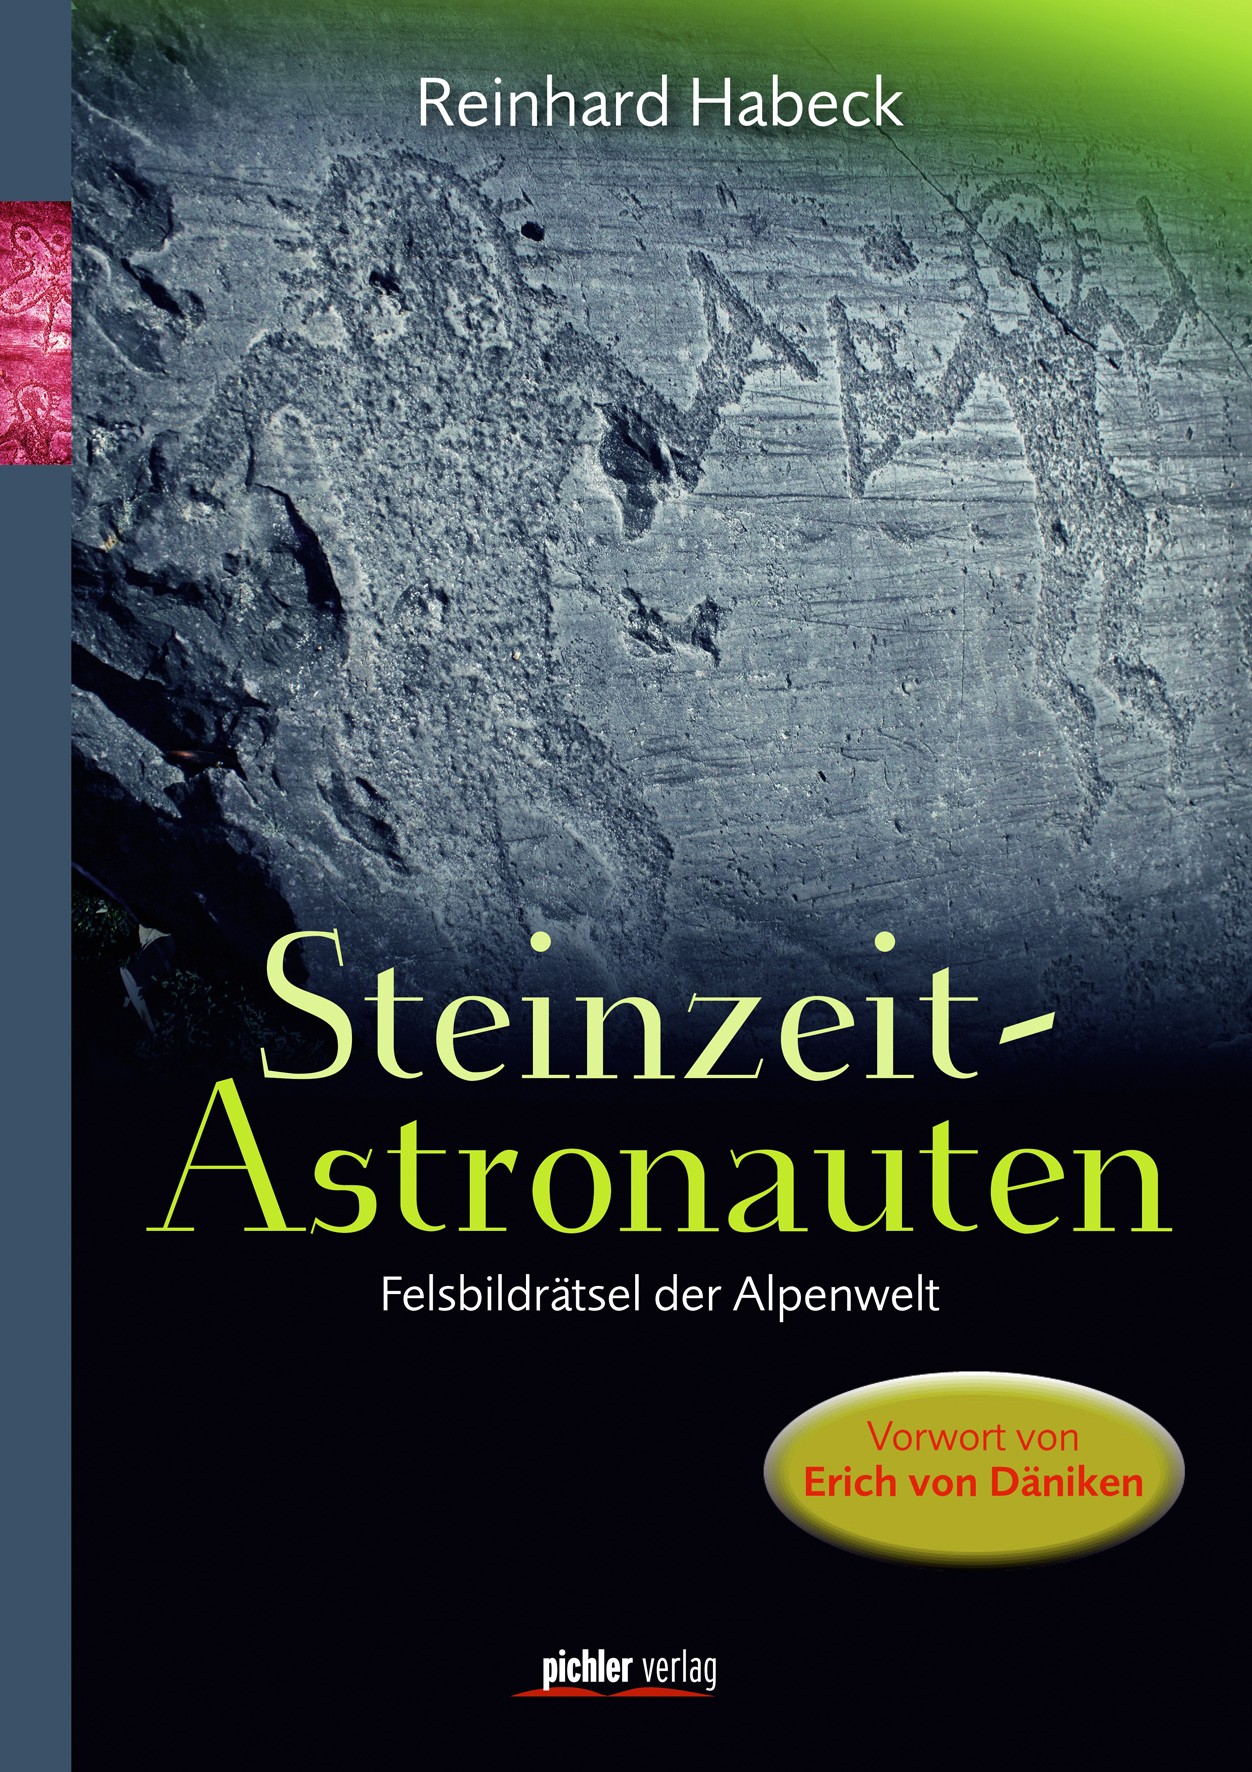 Reinhard Habeck: Steinzeit-Astronauten